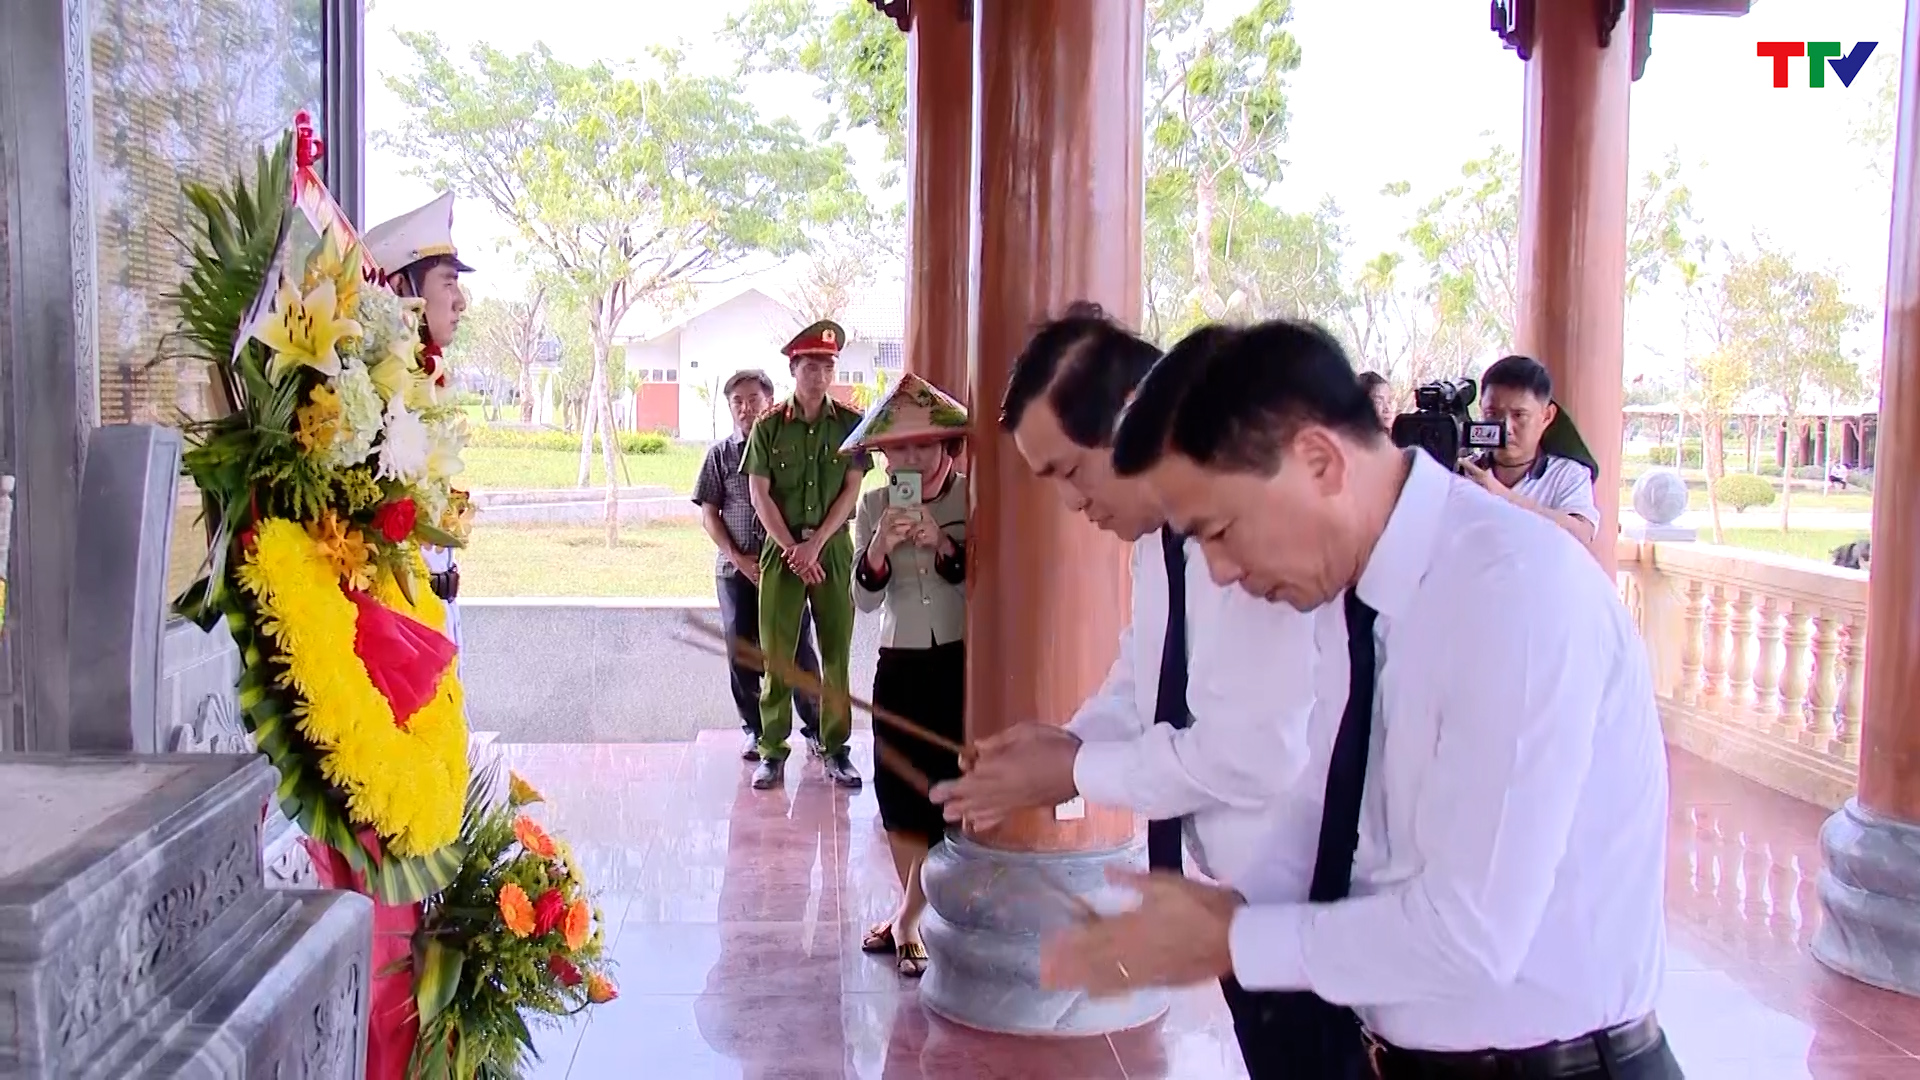 Đồng chí Bí thư Tỉnh ủy Đỗ Trọng Hưng thăm, tặng quà đồng bào bị thiệt hại do lũ lụt tại thành phố Đà Nẵng và tỉnh Quảng Nam - Ảnh 12.